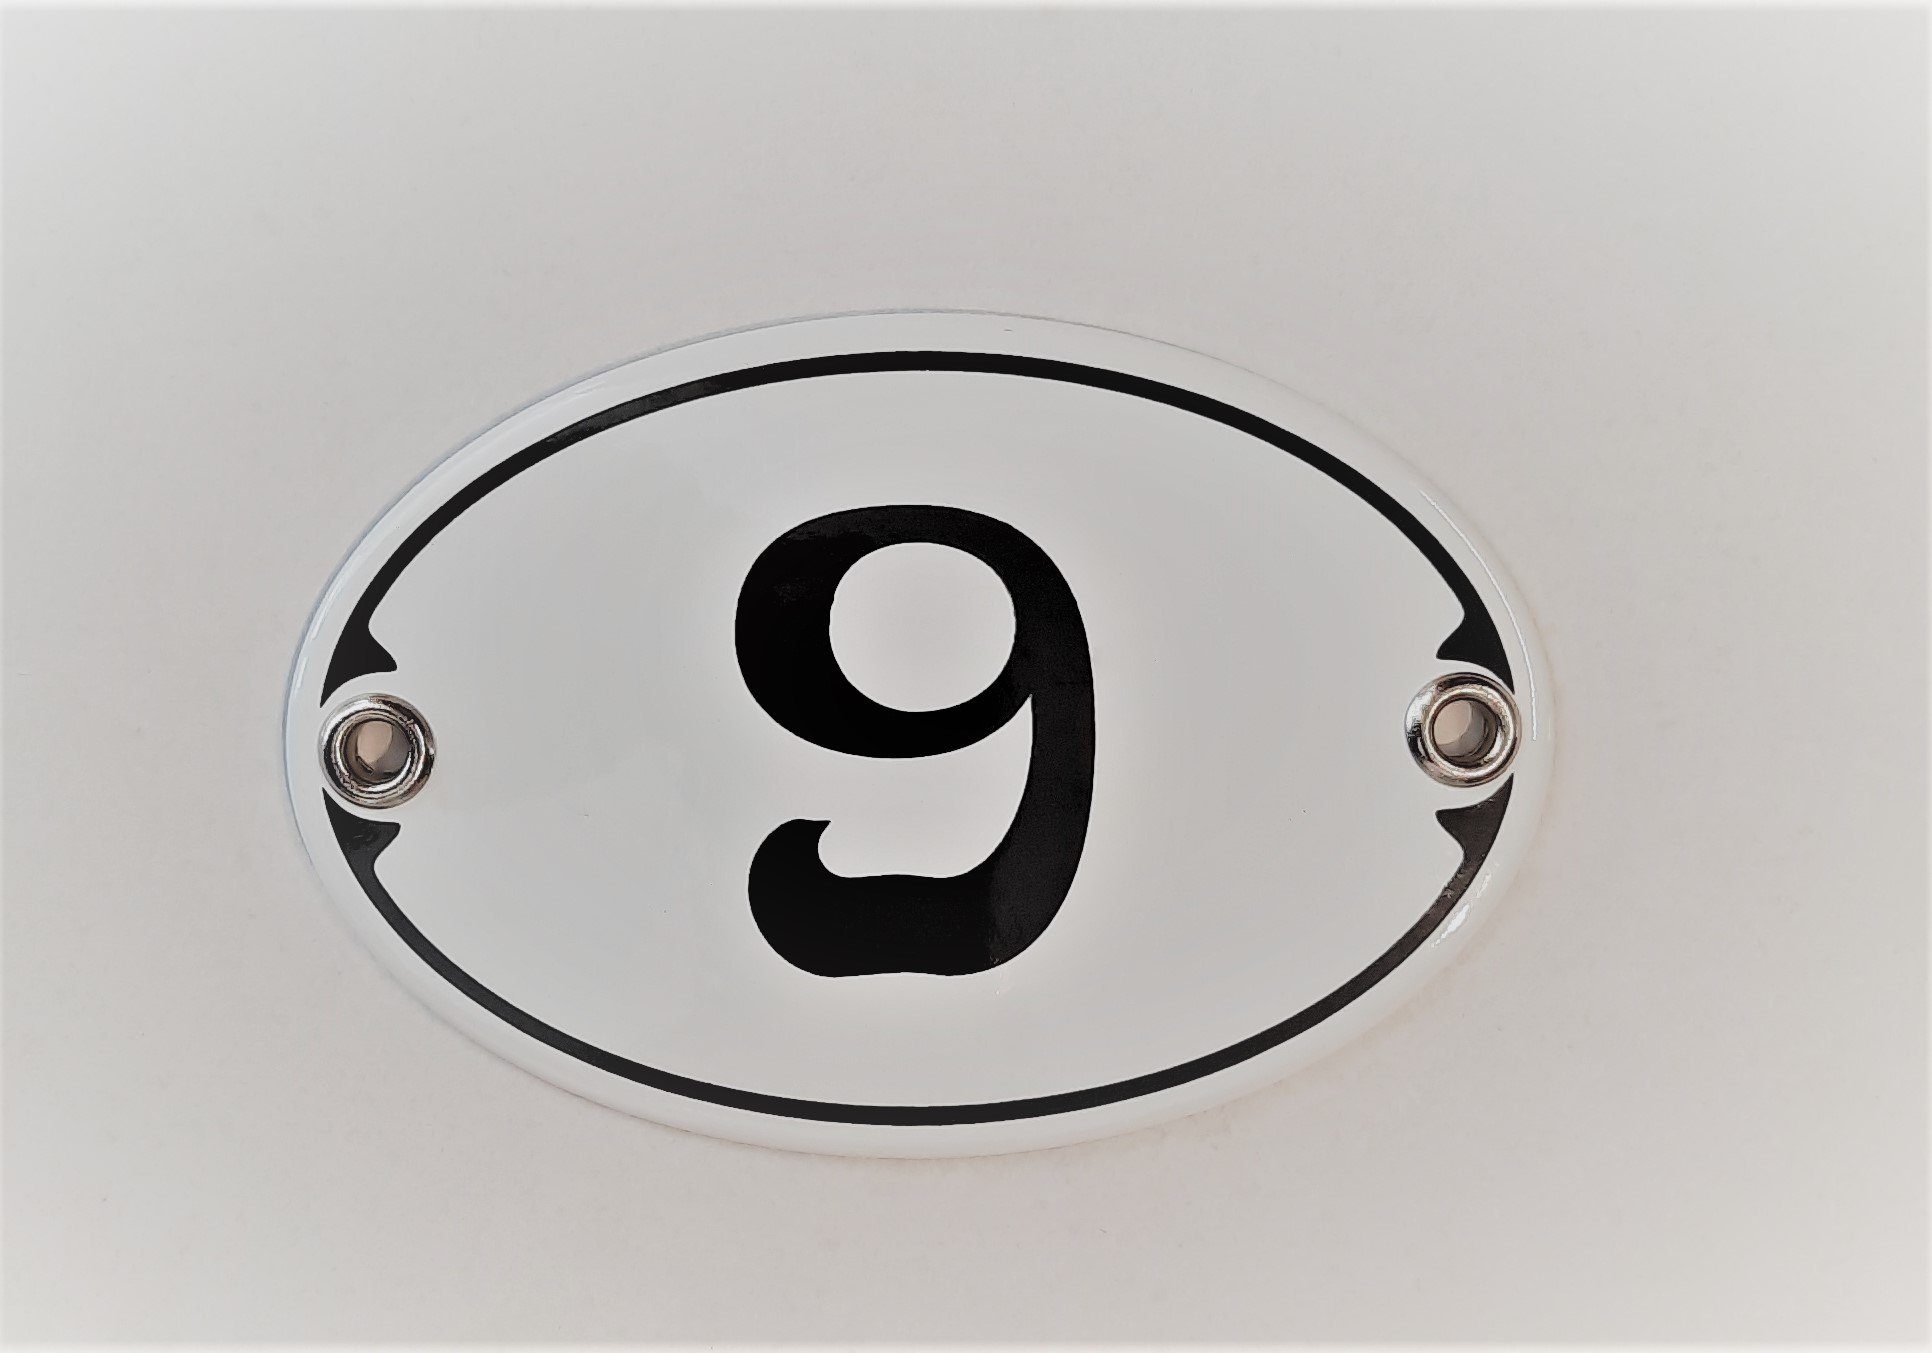 Elina Email Schilder Hausnummer Zahlenschild "9", (Emaille/Email) | Hausnummern